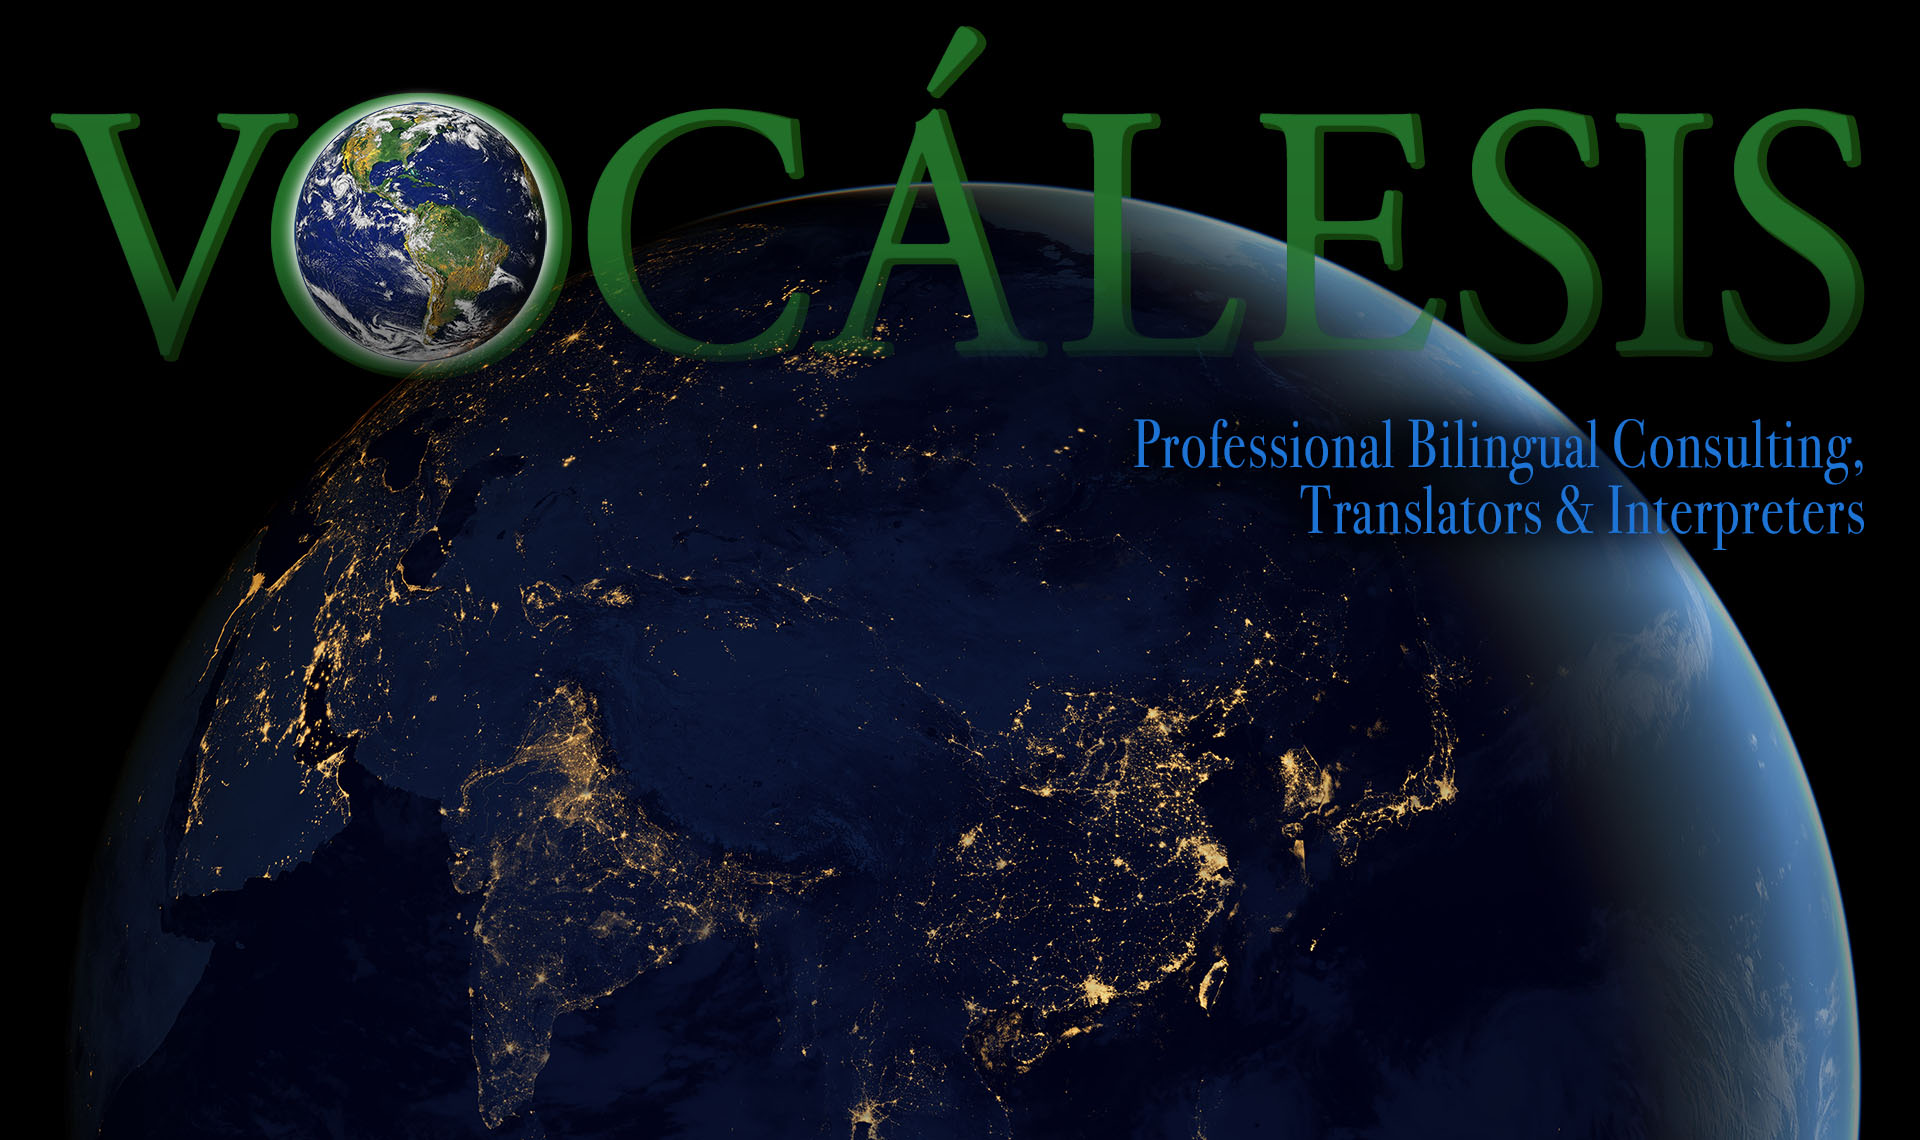 Traductores e Intérpretes Translators and Interpreters